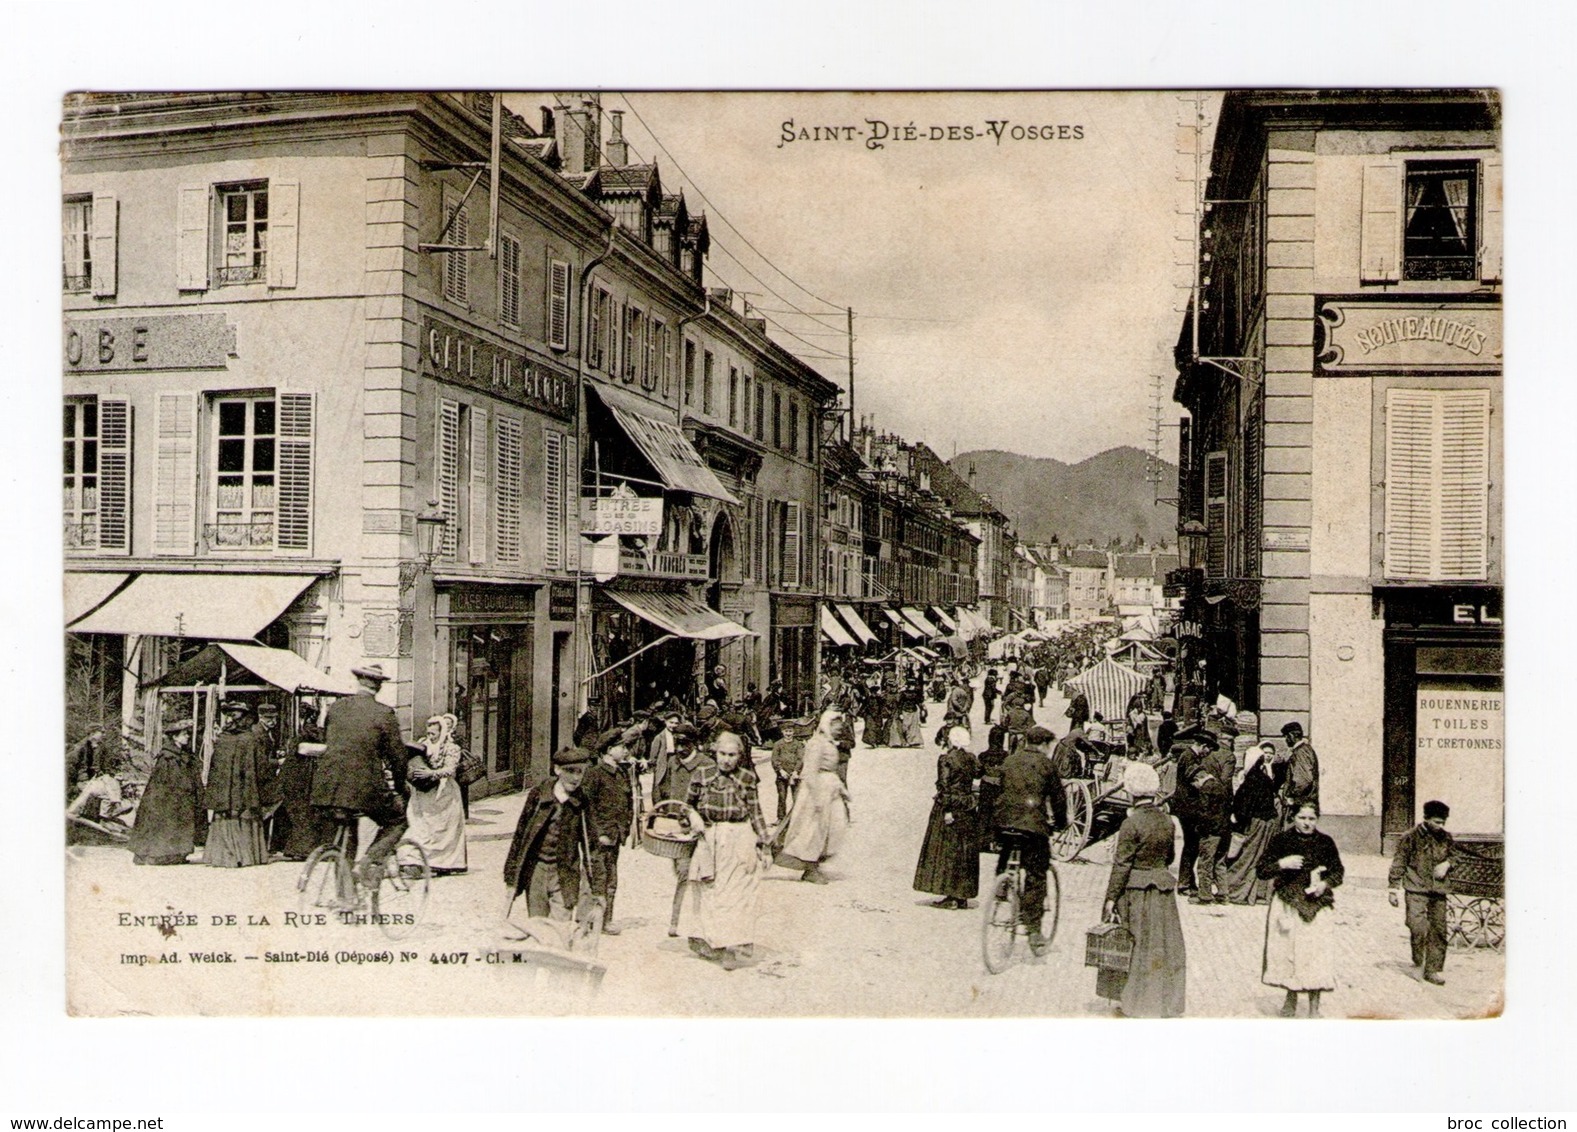 Saint-Dié-des-Vosges, Entrée De La Rue Thiers, 1905, Imp. Ad. Weick N° 4407 -CI. M, Café Du Globe - Saint Die